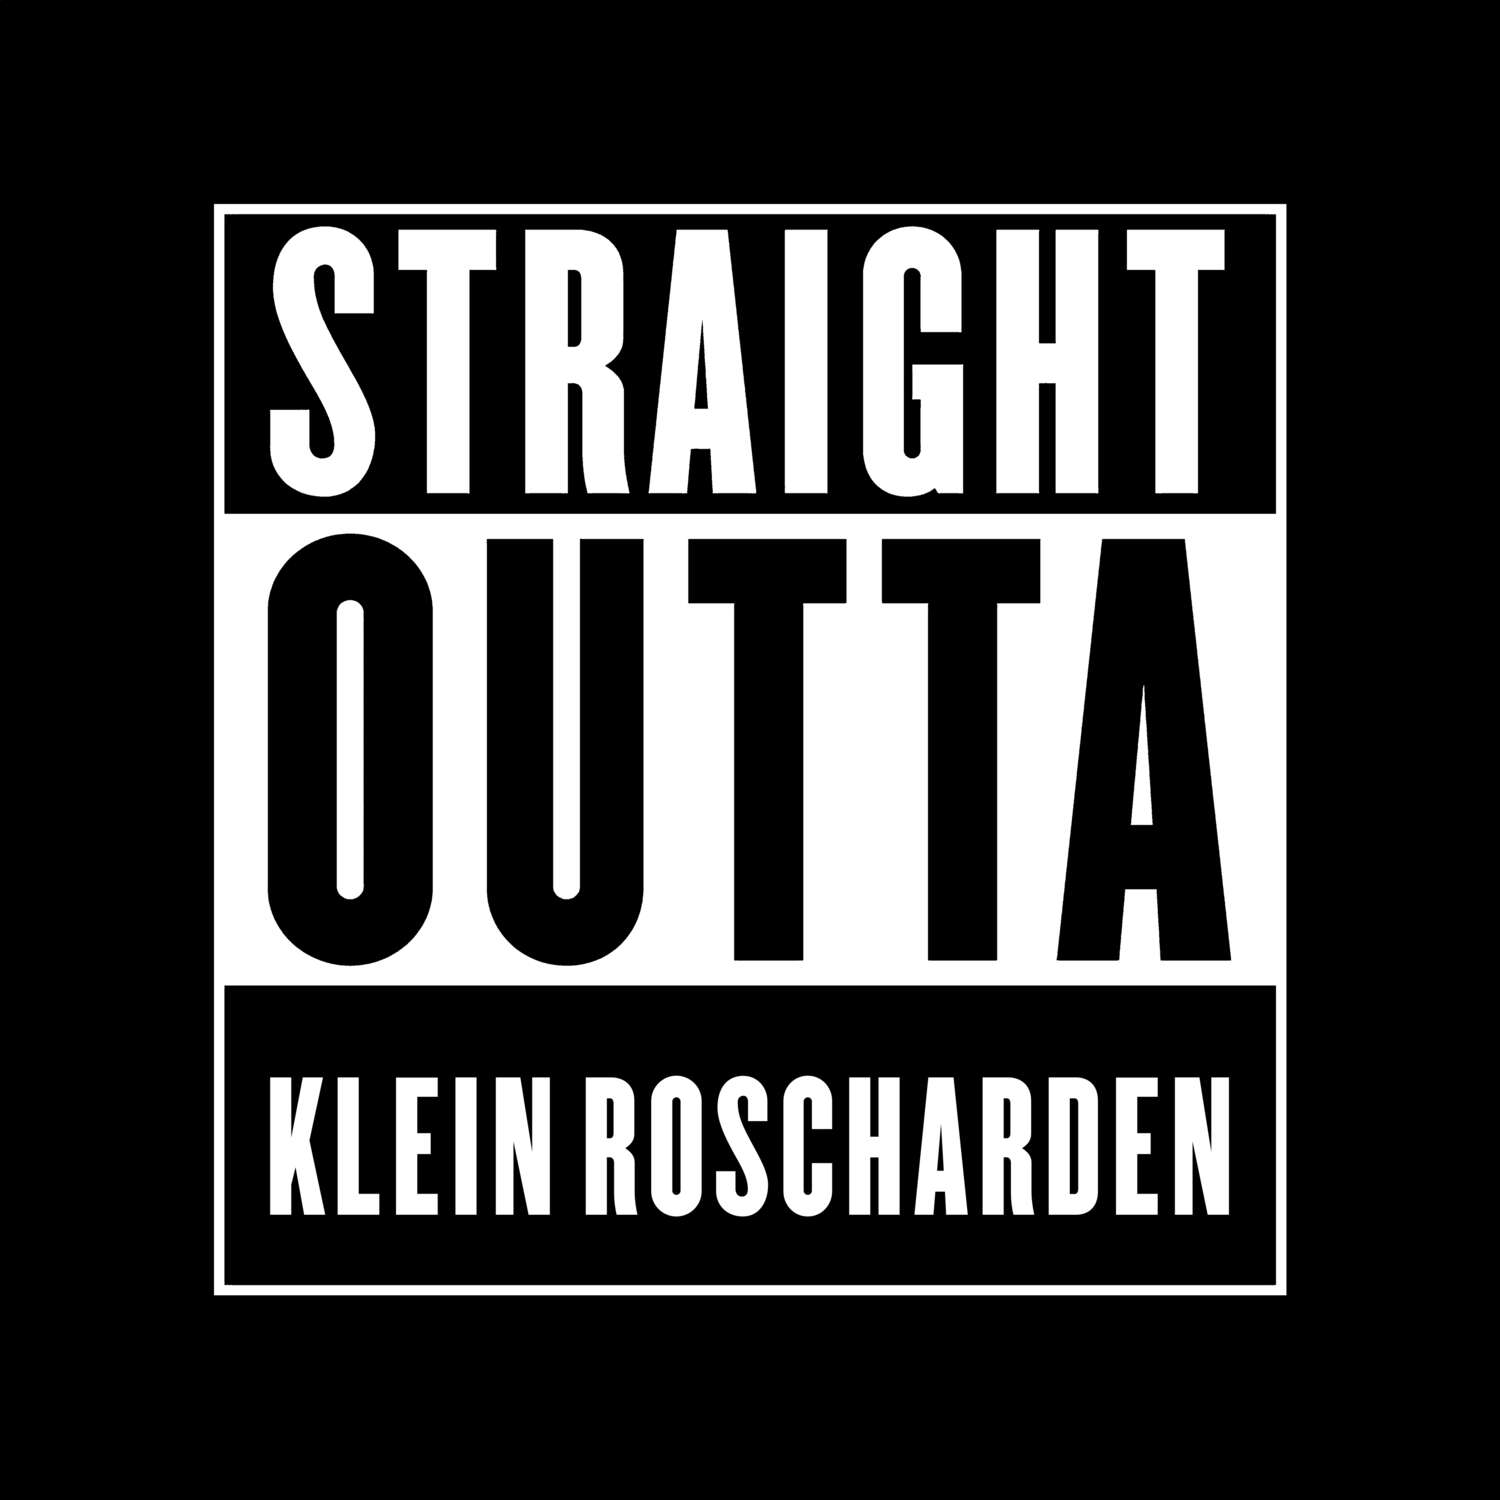 Klein Roscharden T-Shirt »Straight Outta«